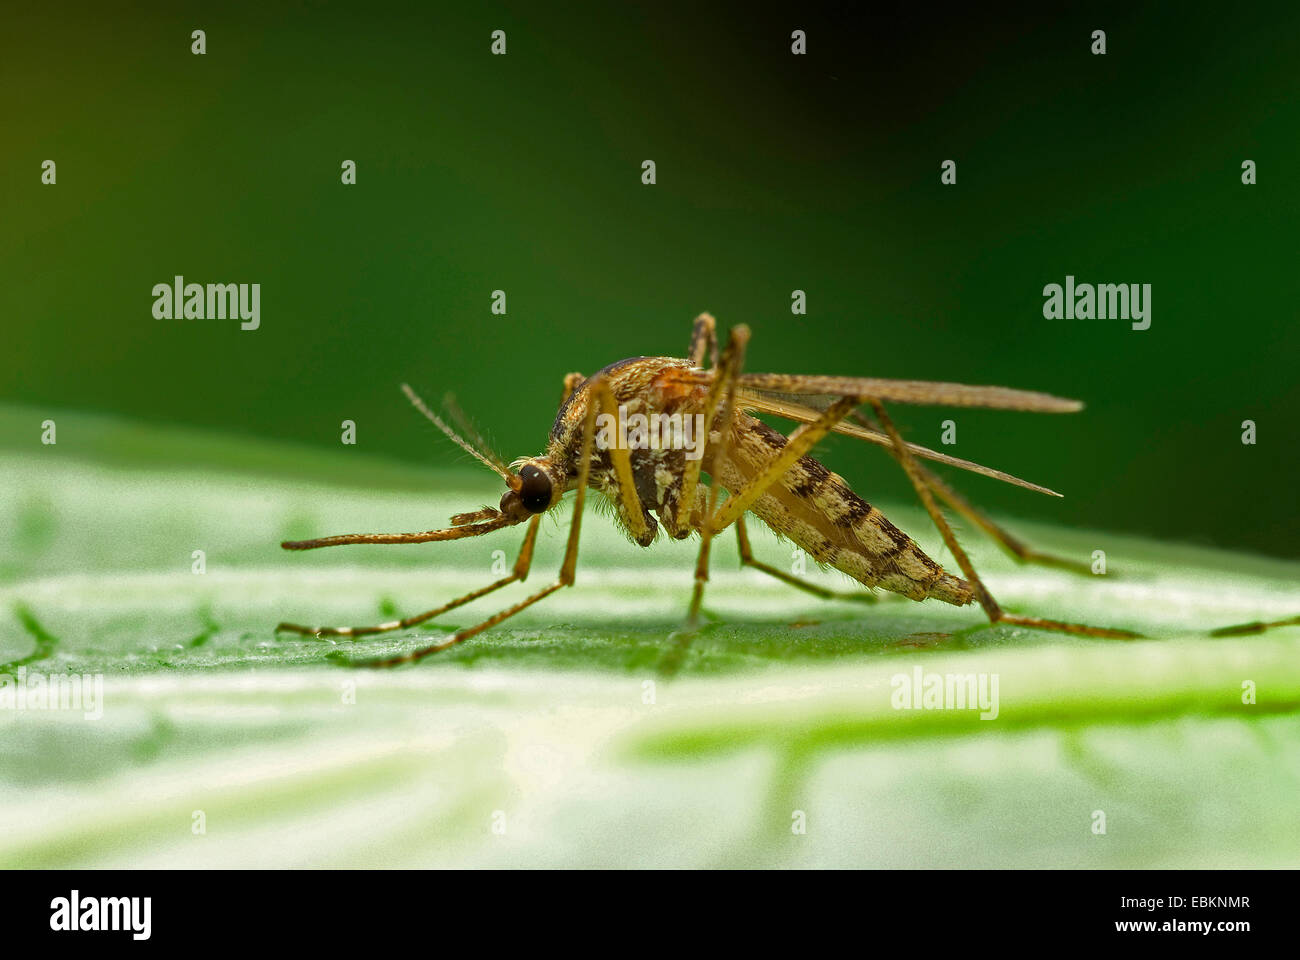 Maison bagués moustique, moustique bagués, anneau-footed gnat (Culiseta annulata, Theobaldia annulata), assis sur une feuille, Allemagne Banque D'Images